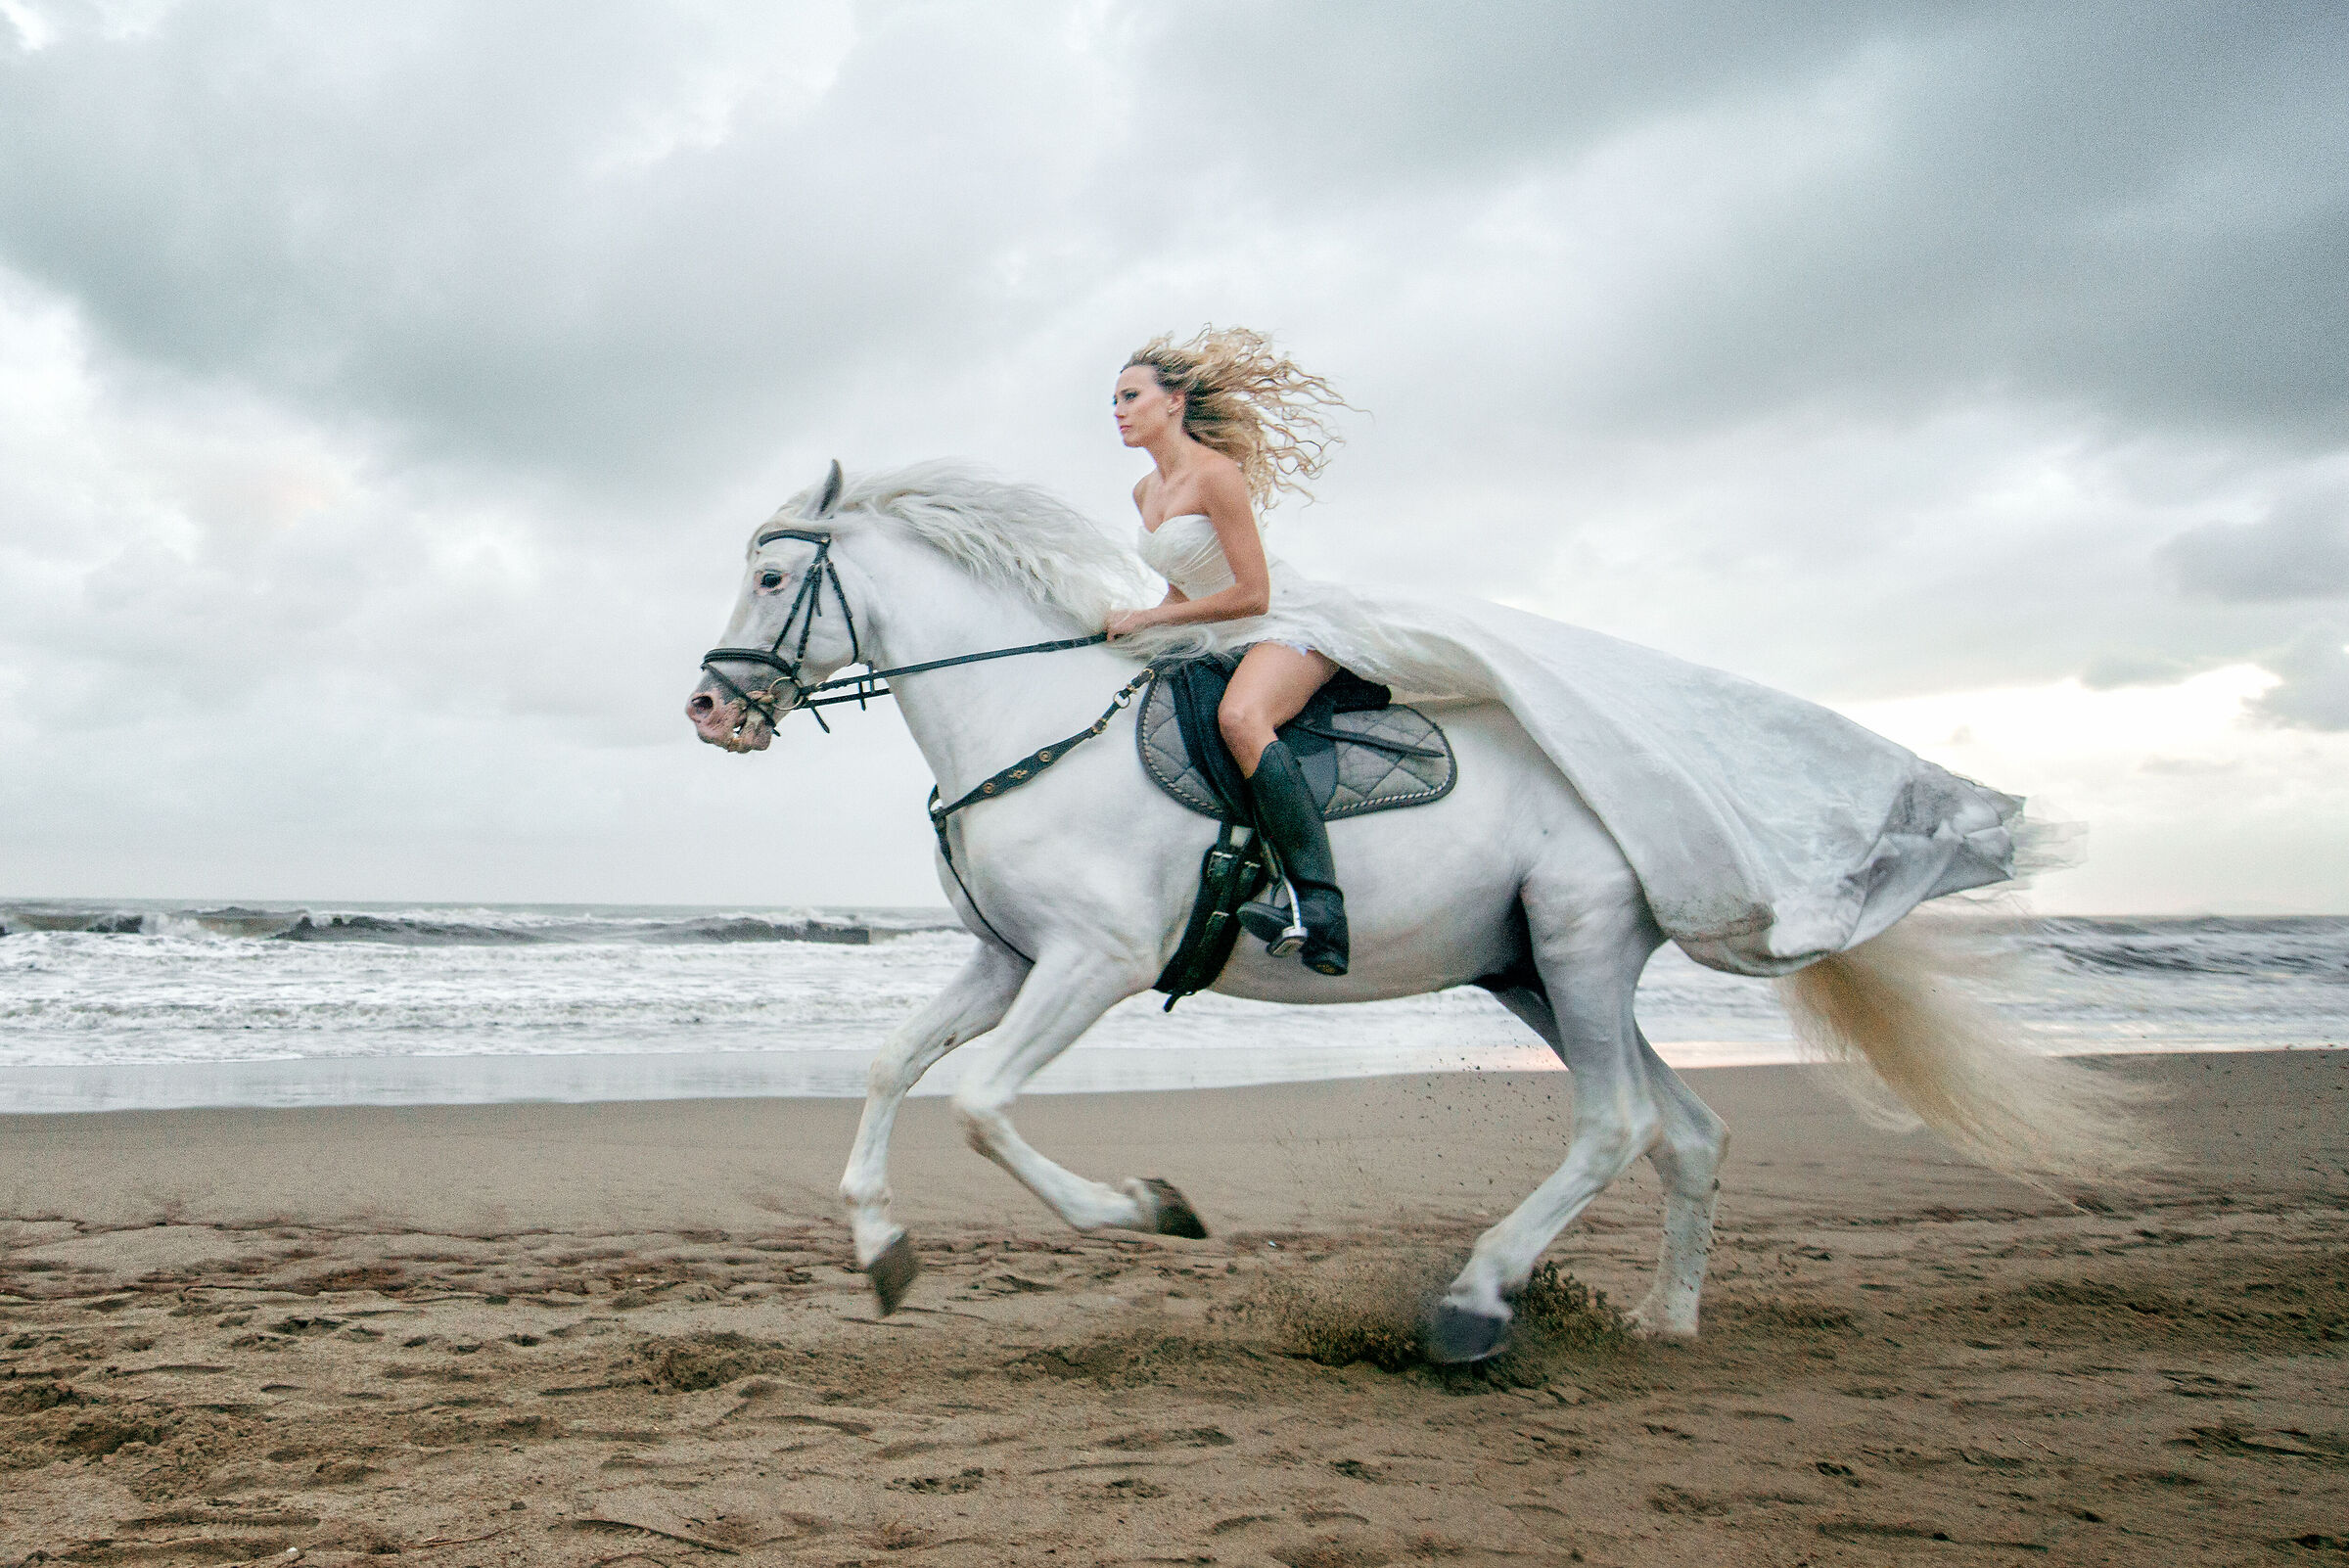 Белые кони кадышевой. Девушка на коне. Фотосессия с белой лошадью. Девушка скачет на коне. Девушка на коне верхом.